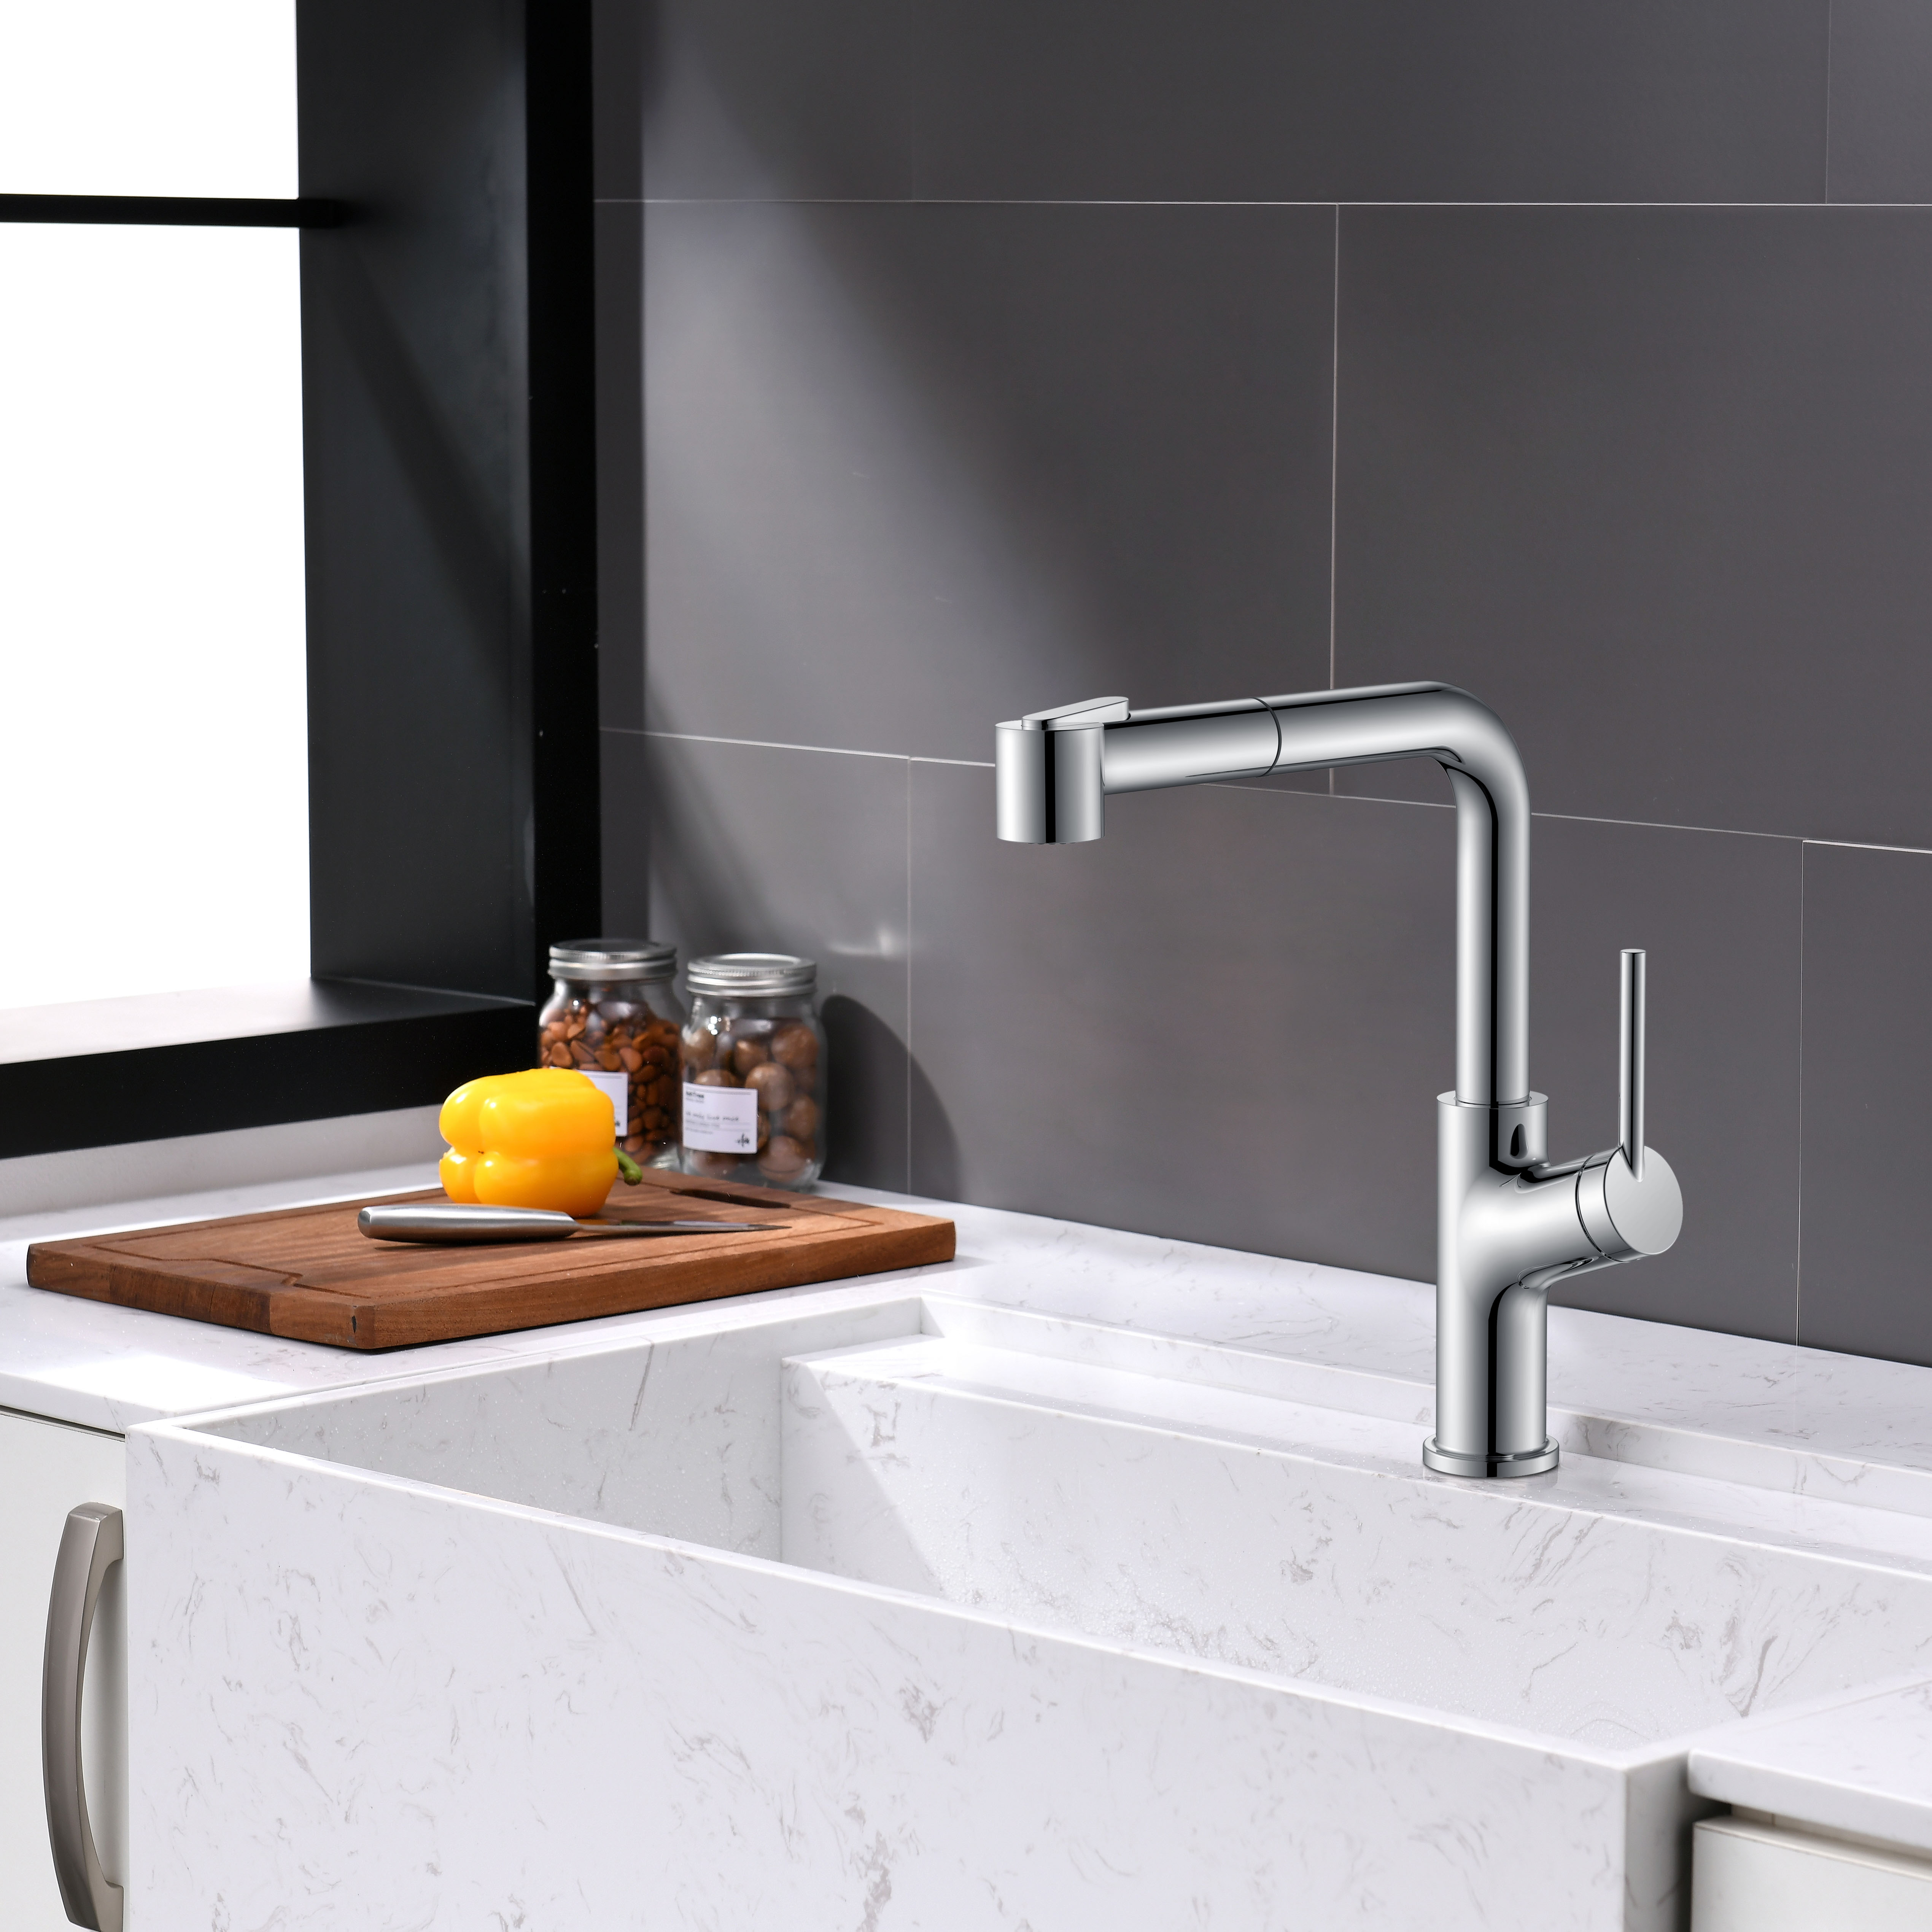 Черный кухонный смеситель Chrome Modern Kitchen Faucets Pullout